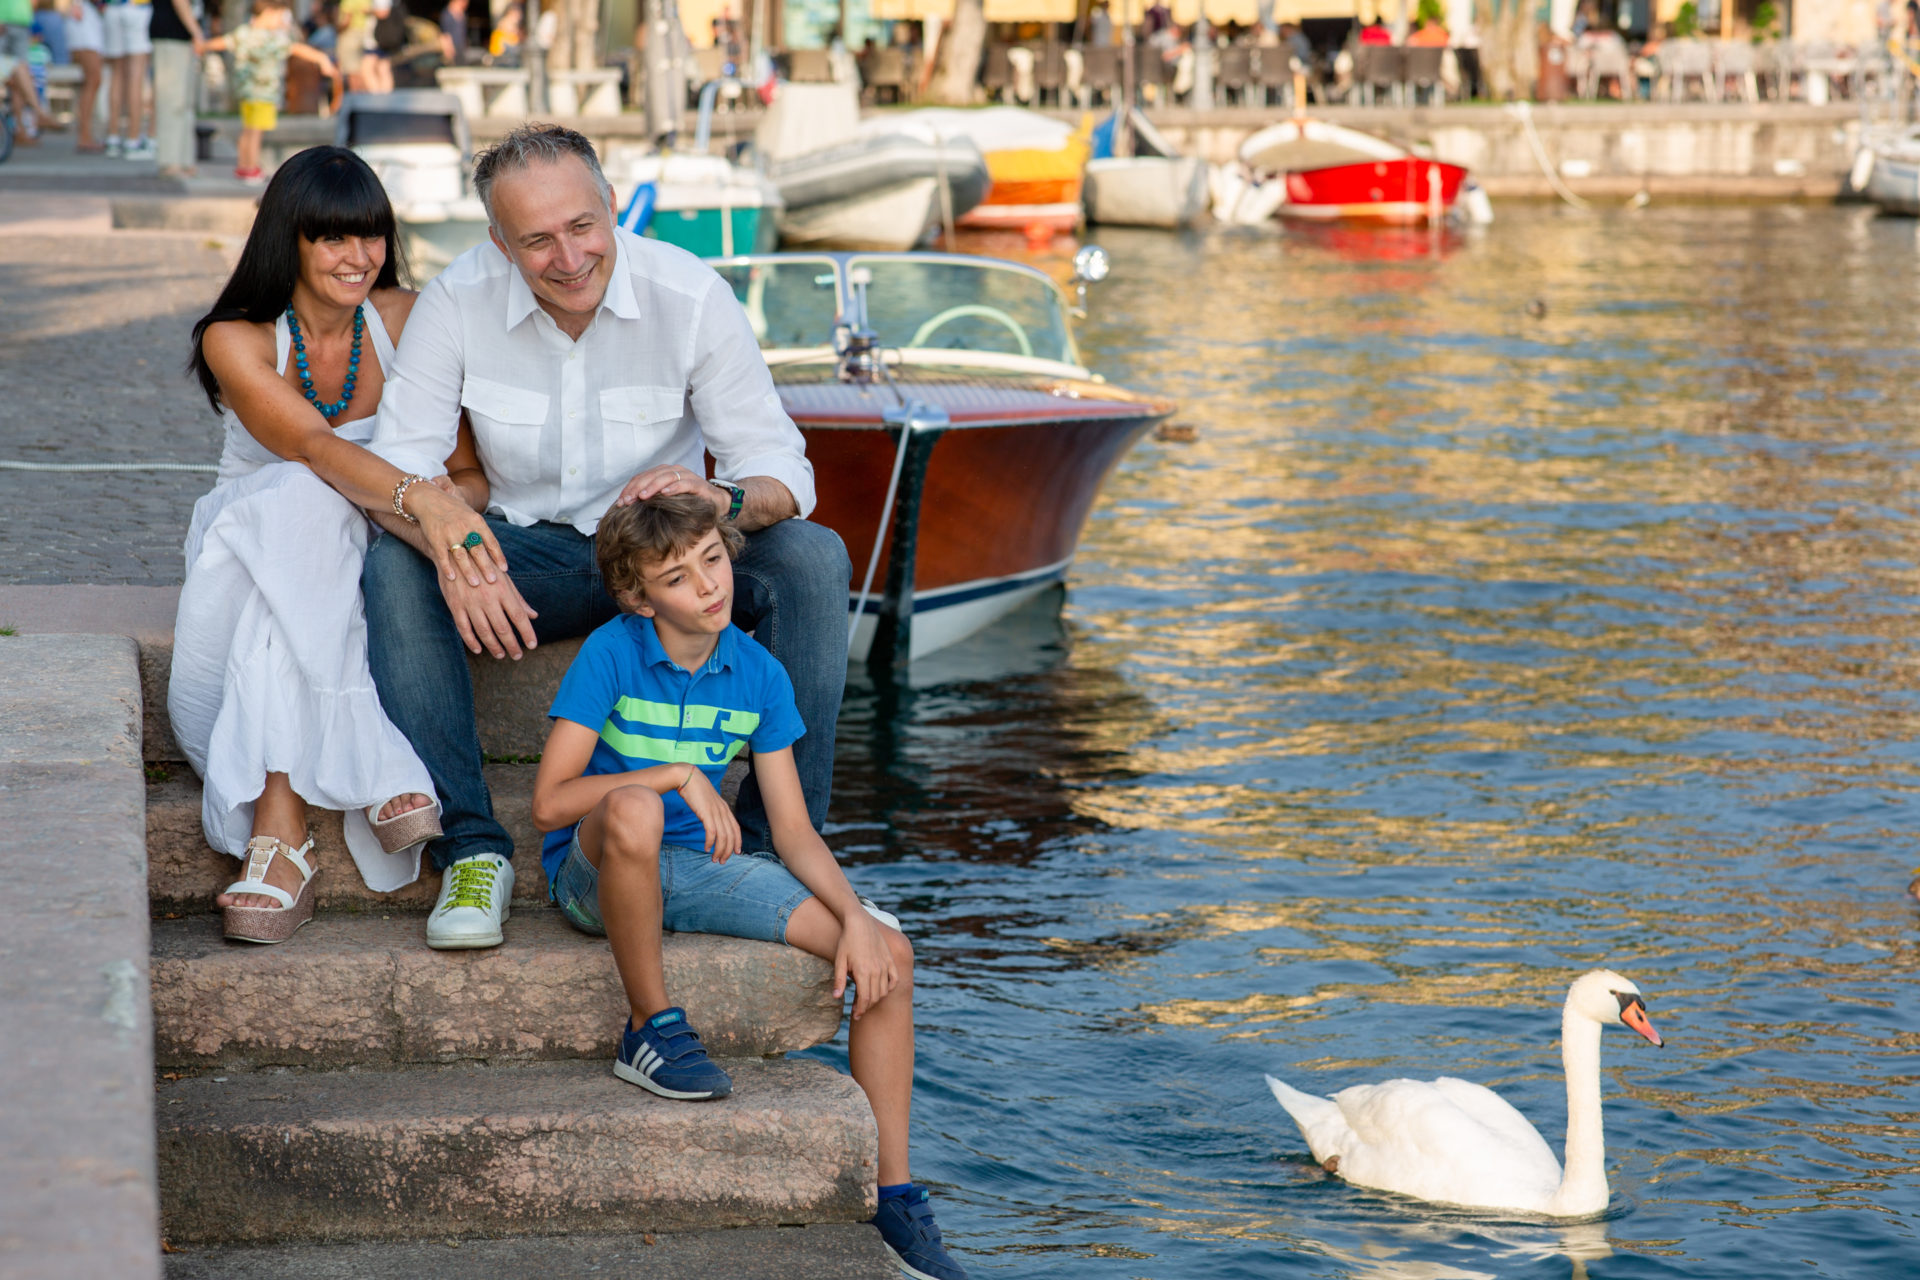 Servizi fotografici per ritratti e famiglia - Family Photos at Lake Garda with the Local Photographer